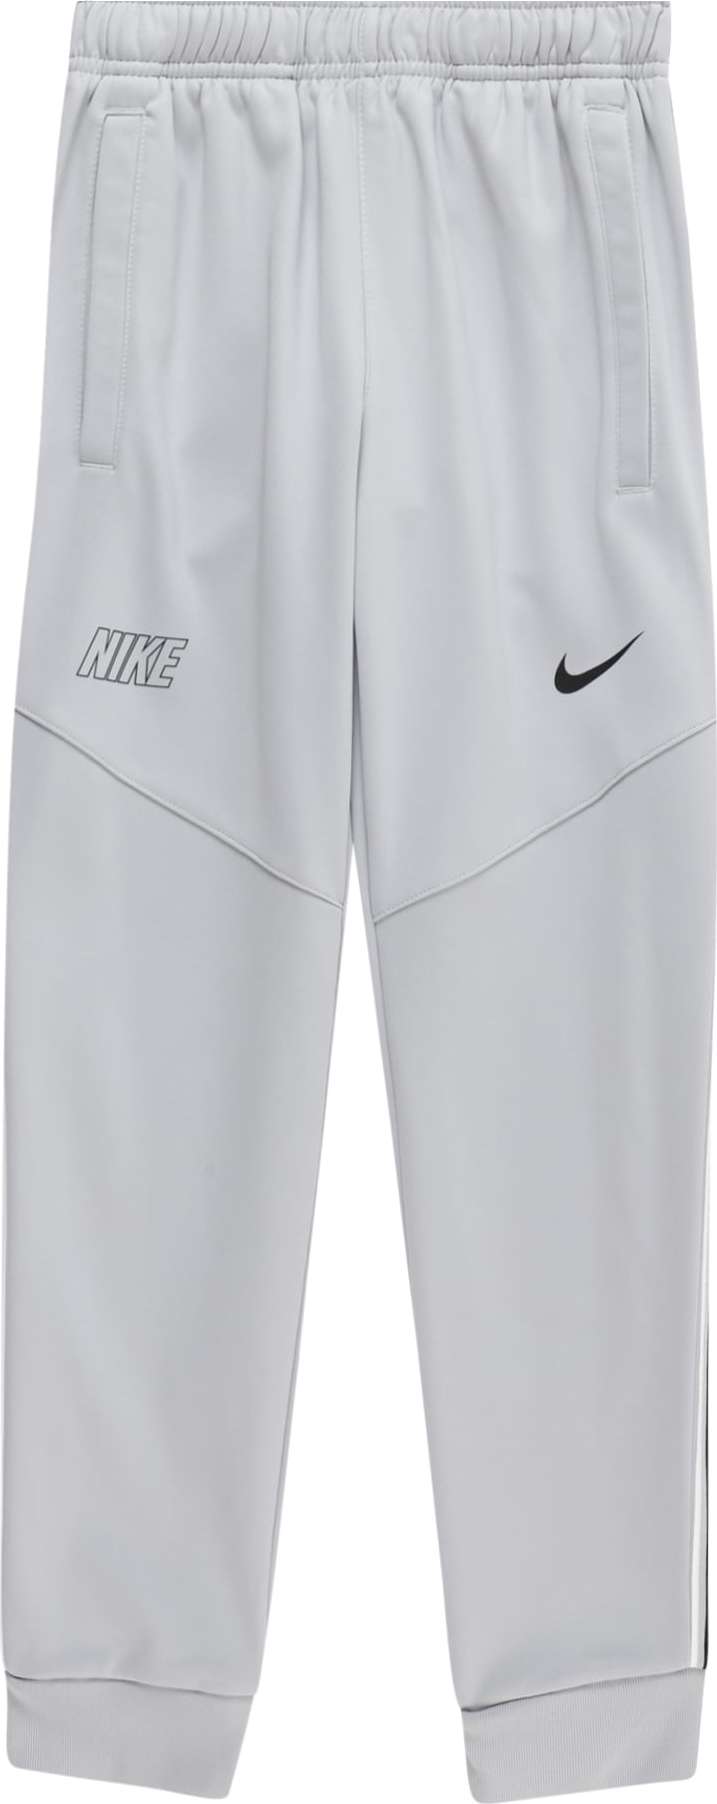 Kalhoty Nike Sportswear stříbrně šedá / černá / bílá